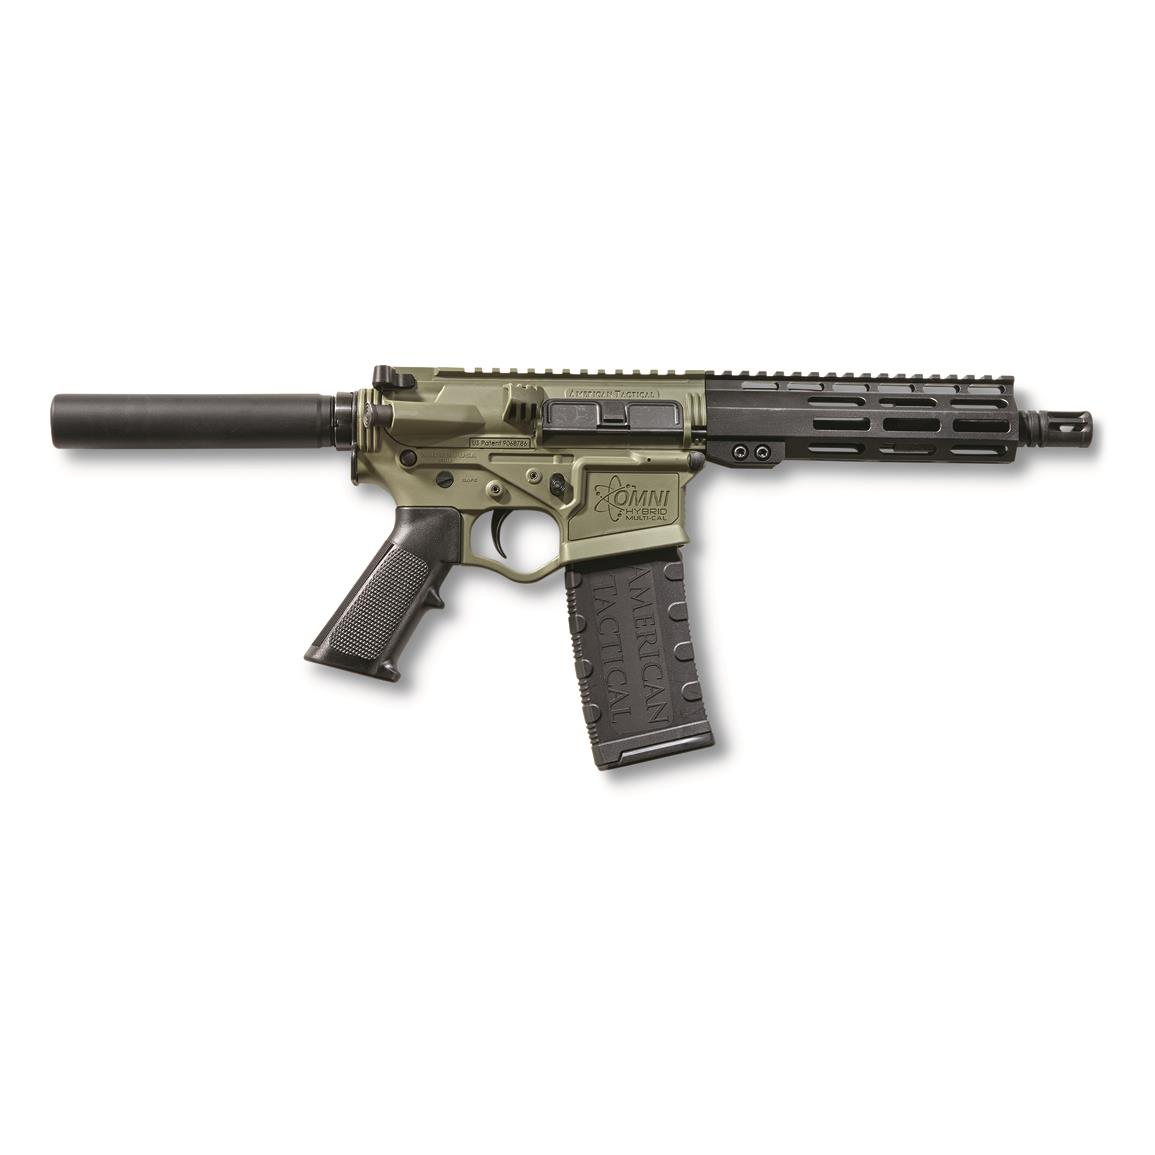 ATI Omni Hybrid Maxx P4 AR Pistol, SemiAutomatic, 5.56 NATO/.223 Rem